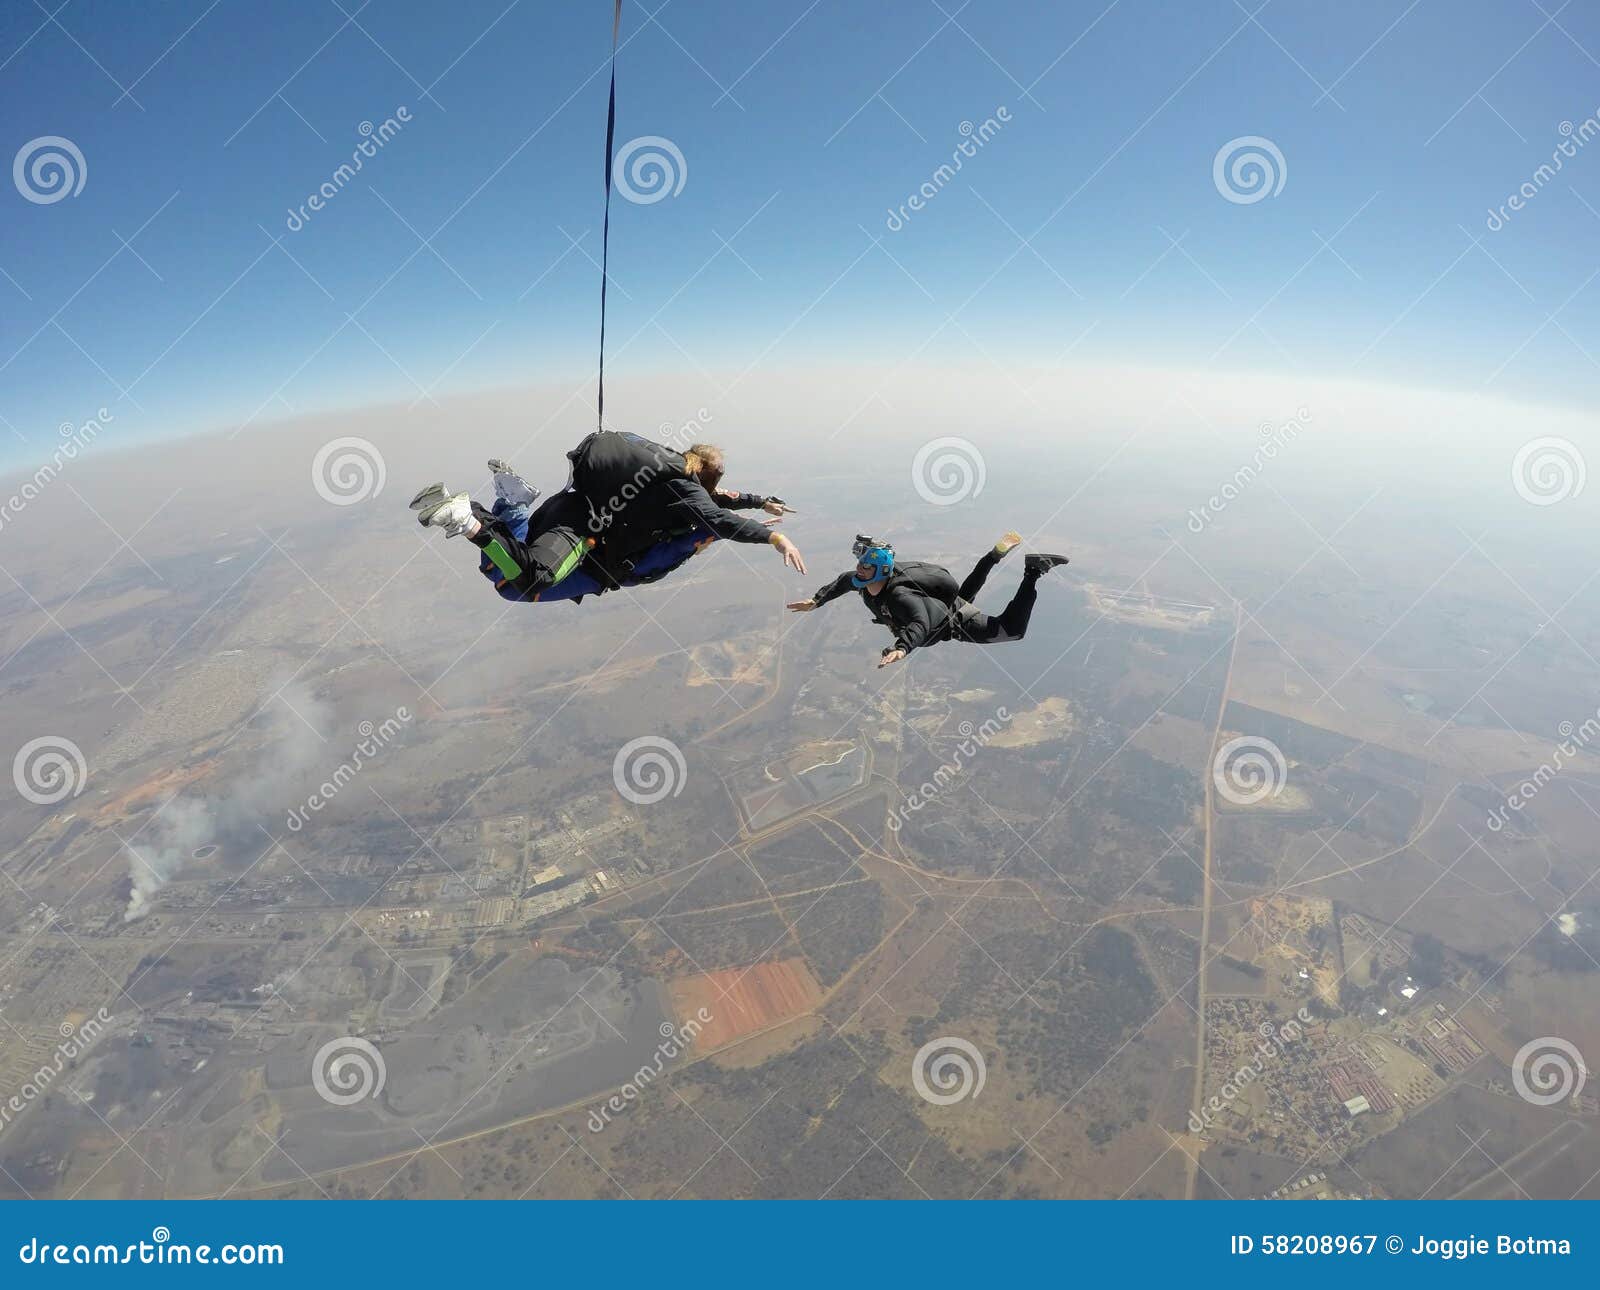 skydiver films tandem skydive